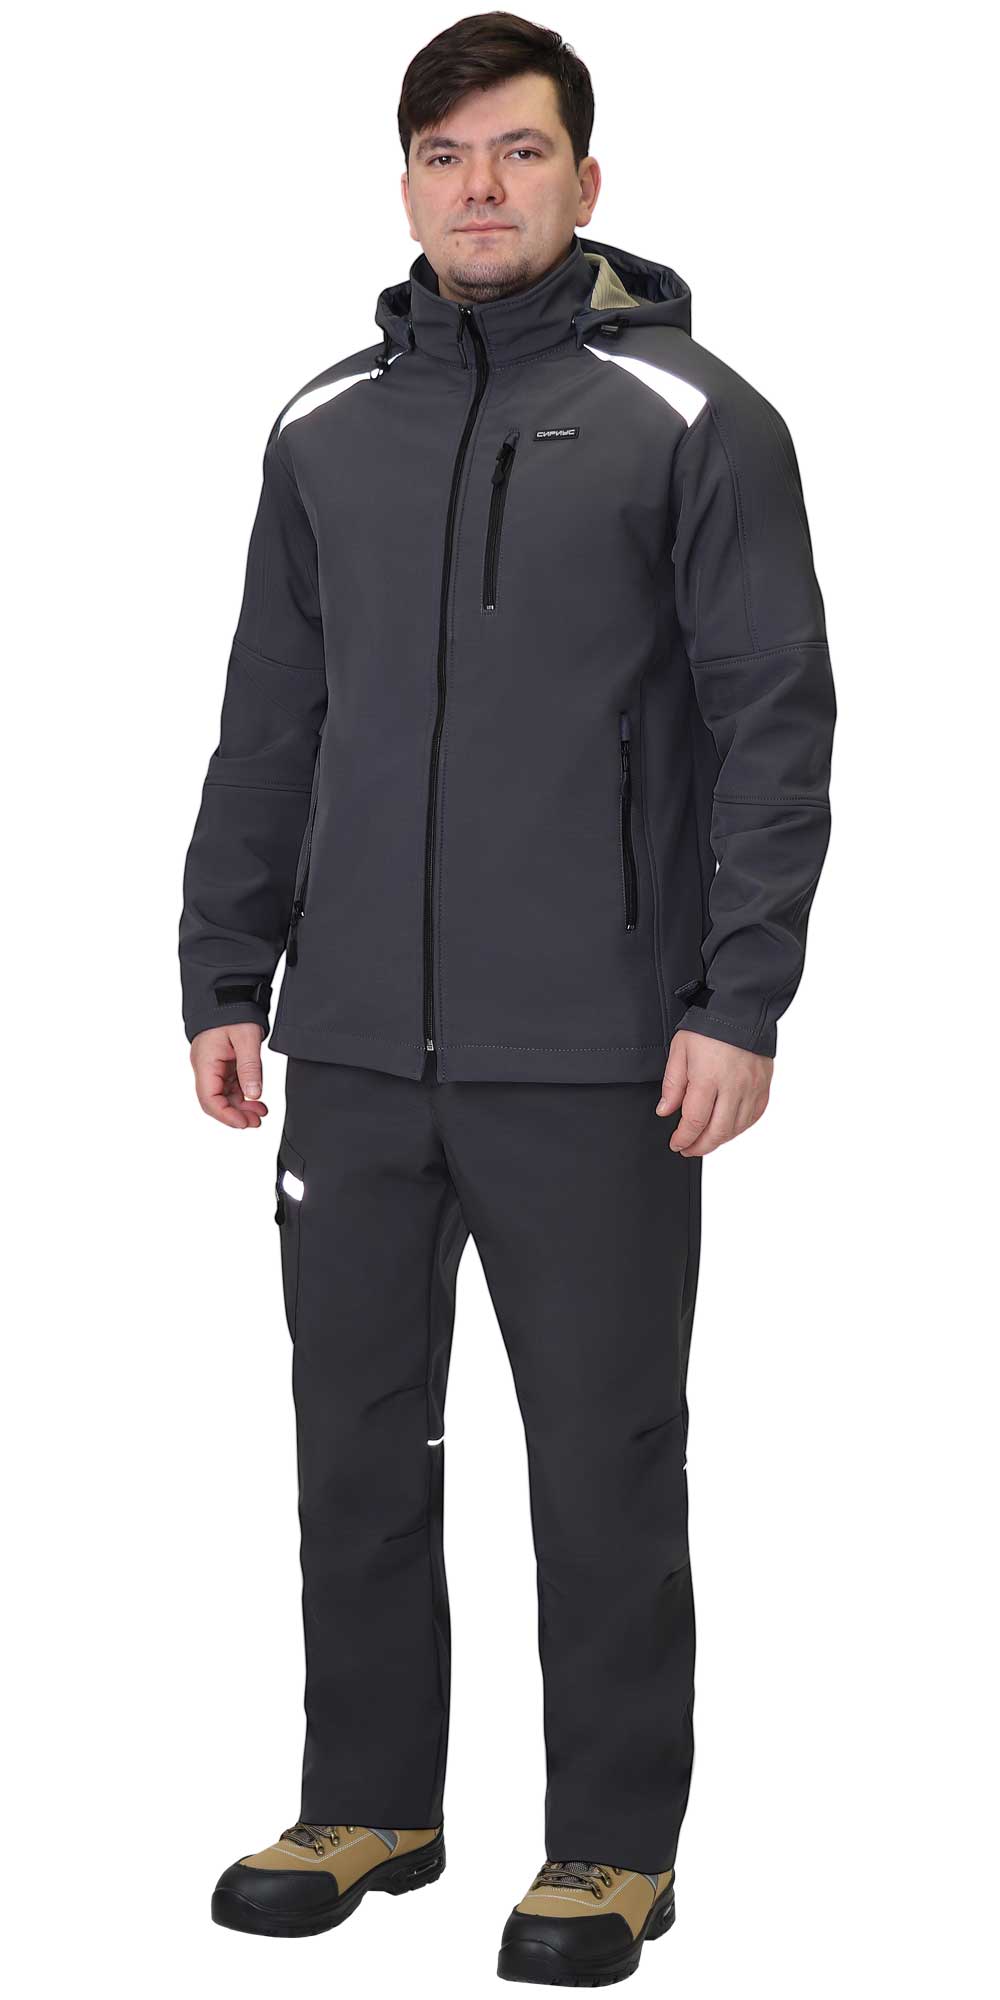 Демисезонная куртка "СИРИУС-СПЕЙС" мужская, цвет: темно-серый, ткань: Софтшелл